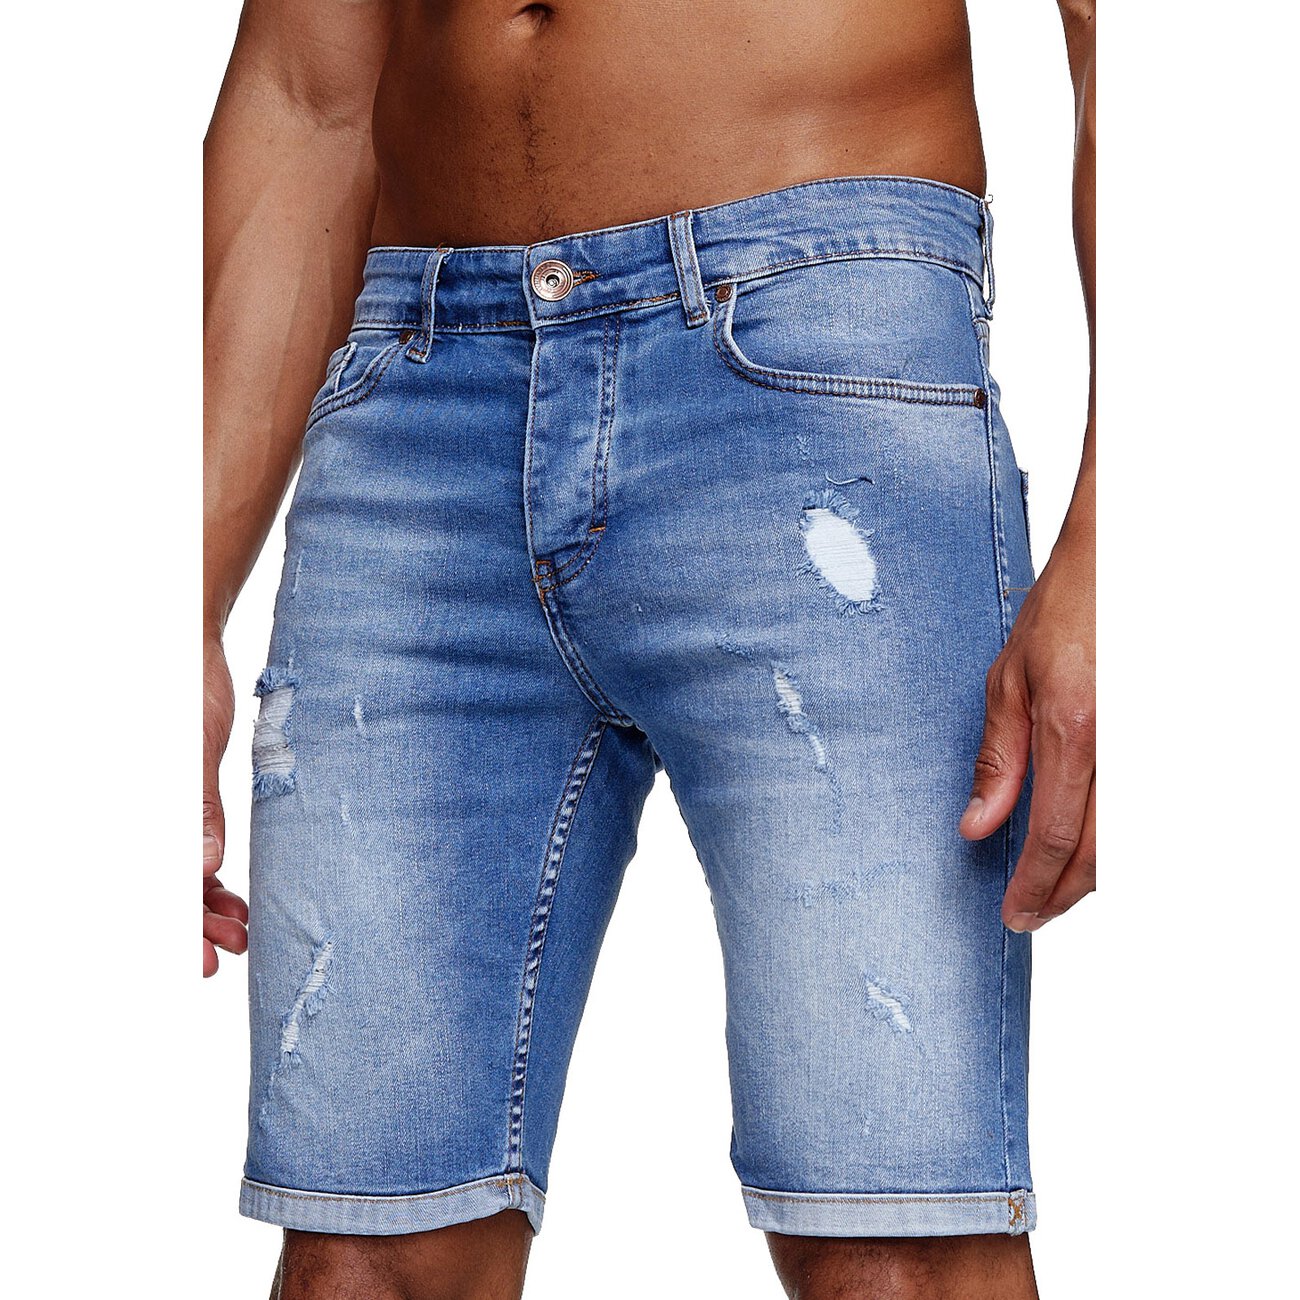 .iProfash Herren Bermuda Jeans Shorts Stretch Denim Kurze Capri Hose Sommer 022.